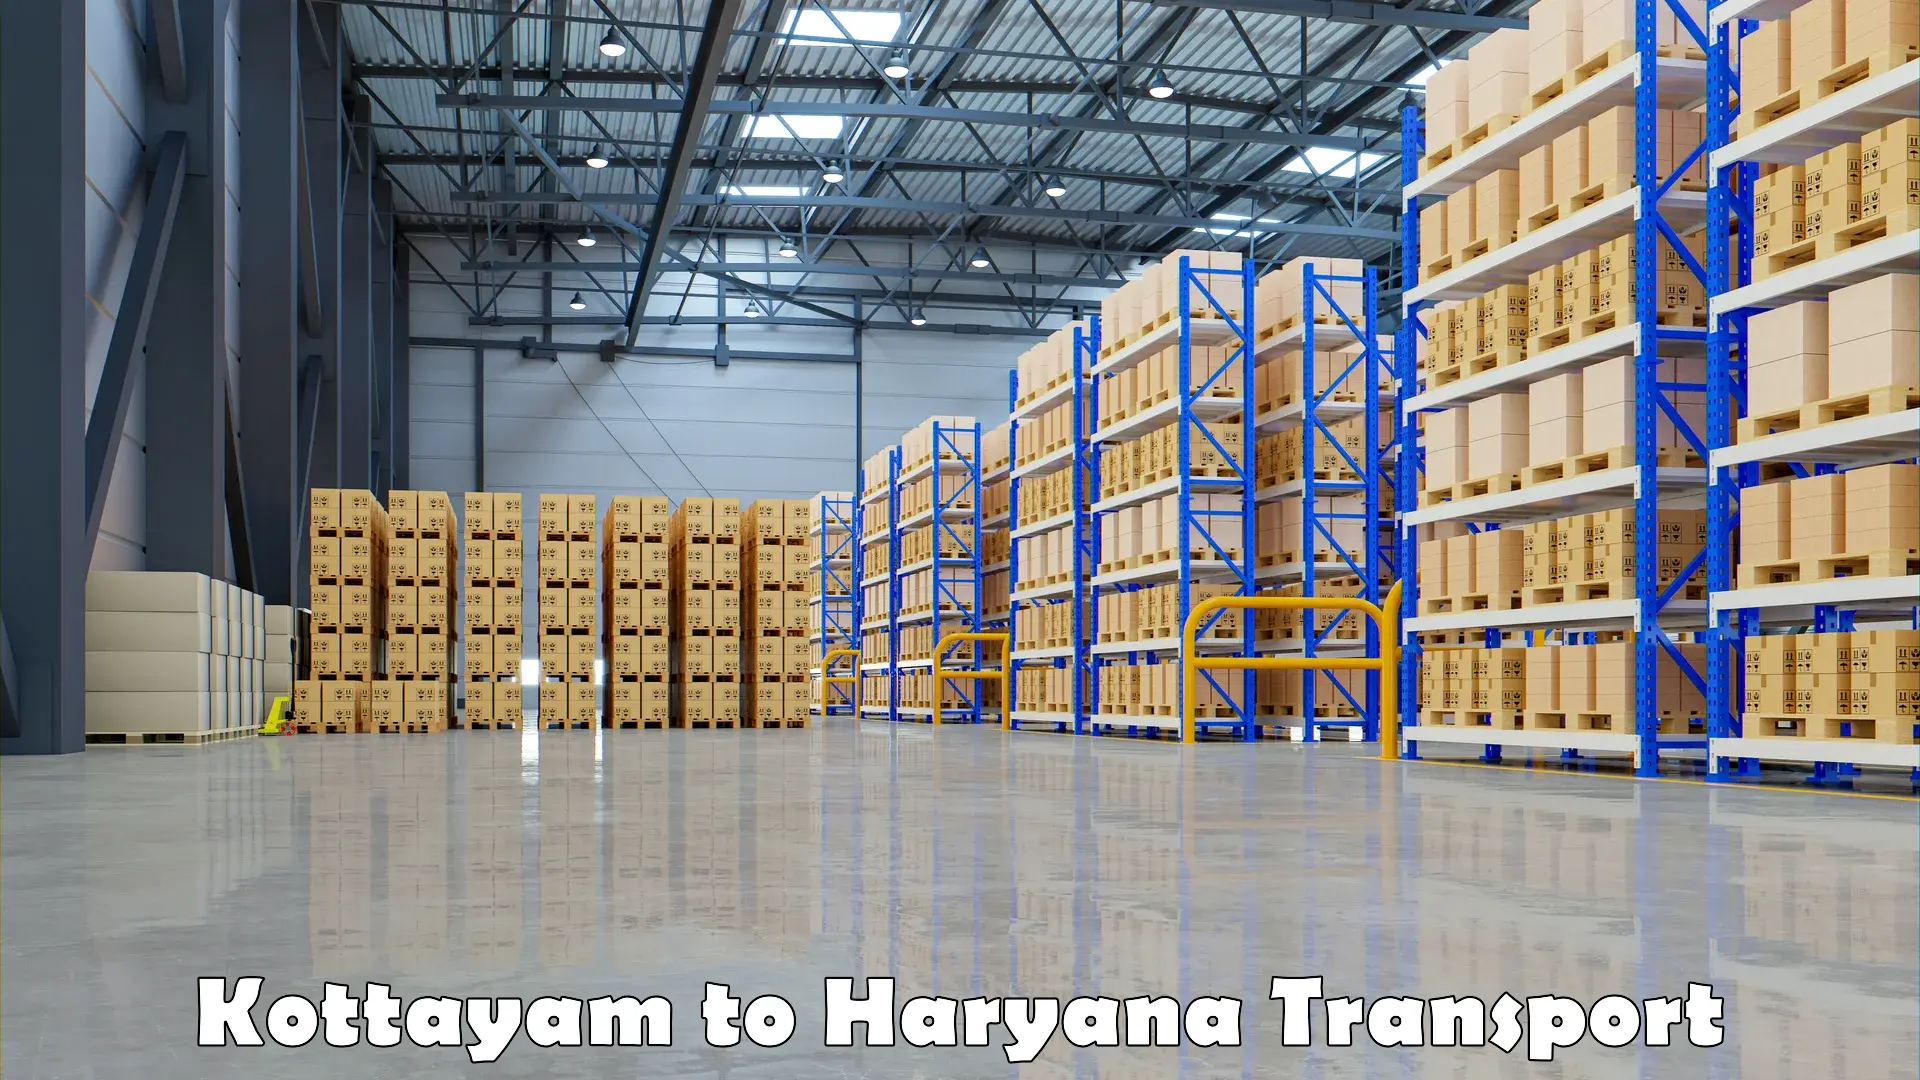 Container transport service Kottayam to Kurukshetra University